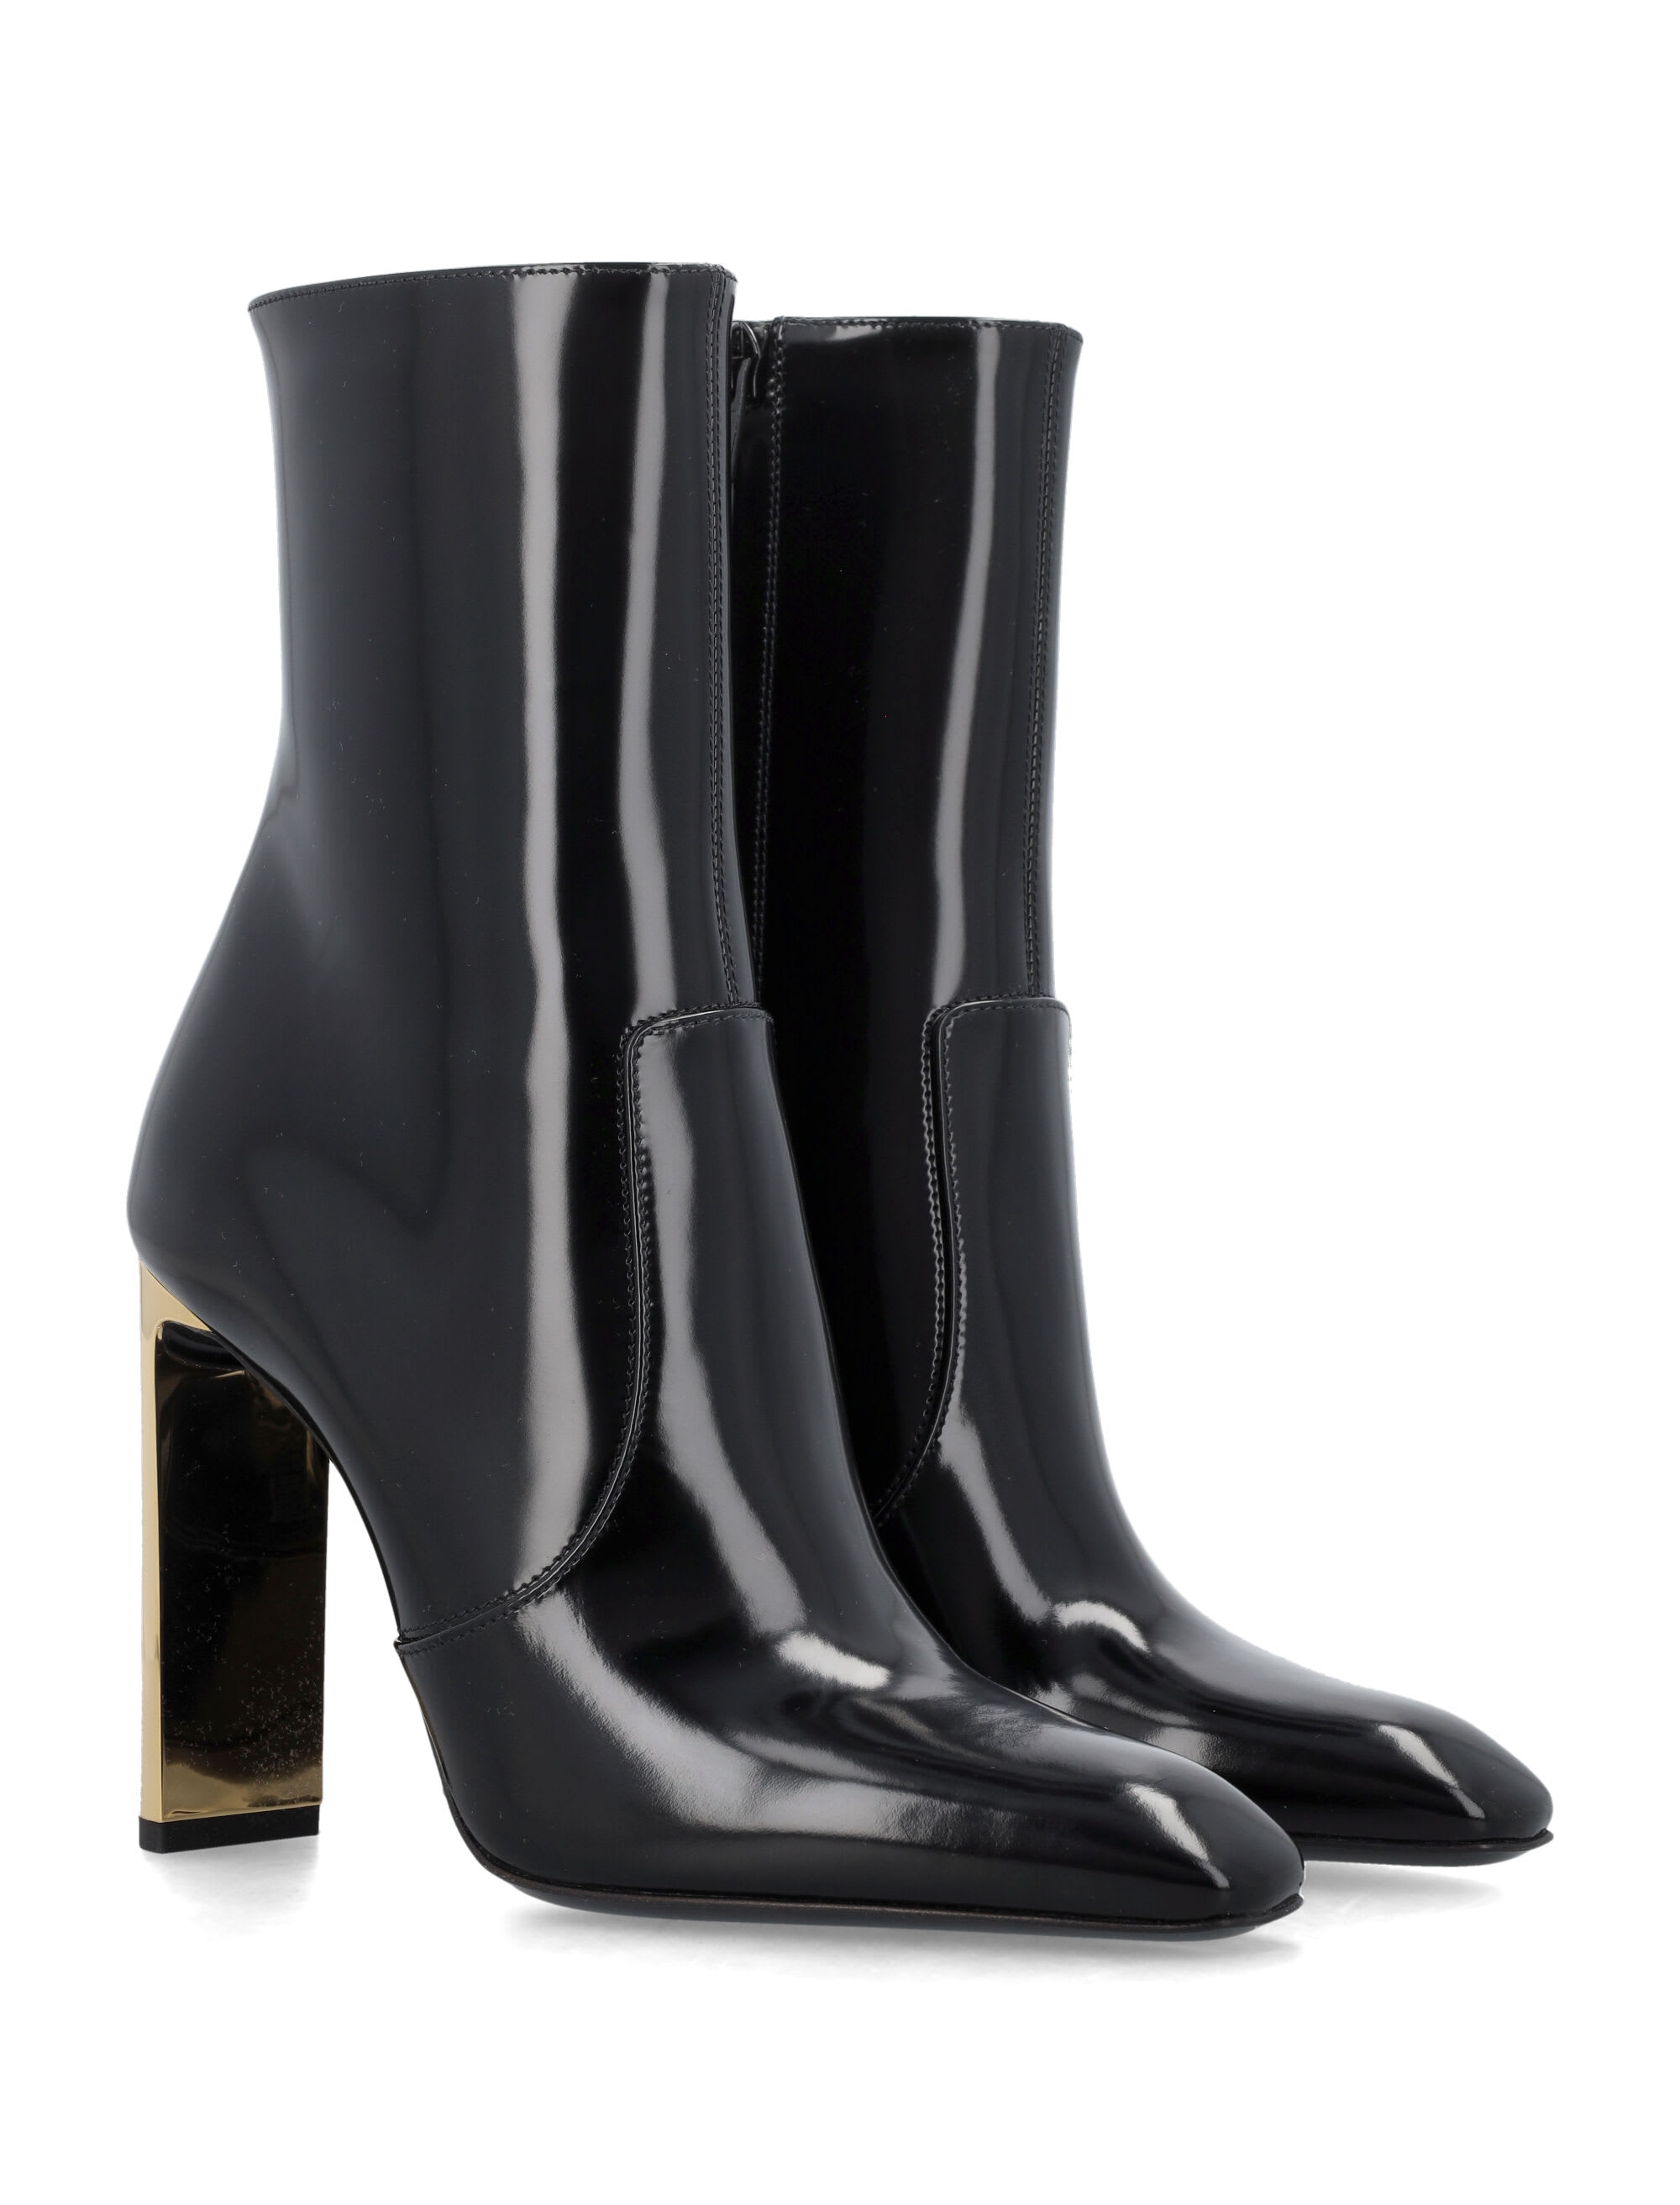 Louis Vuitton Black Patent Leather Silhouette Ankle Boots Size 35 Louis  Vuitton